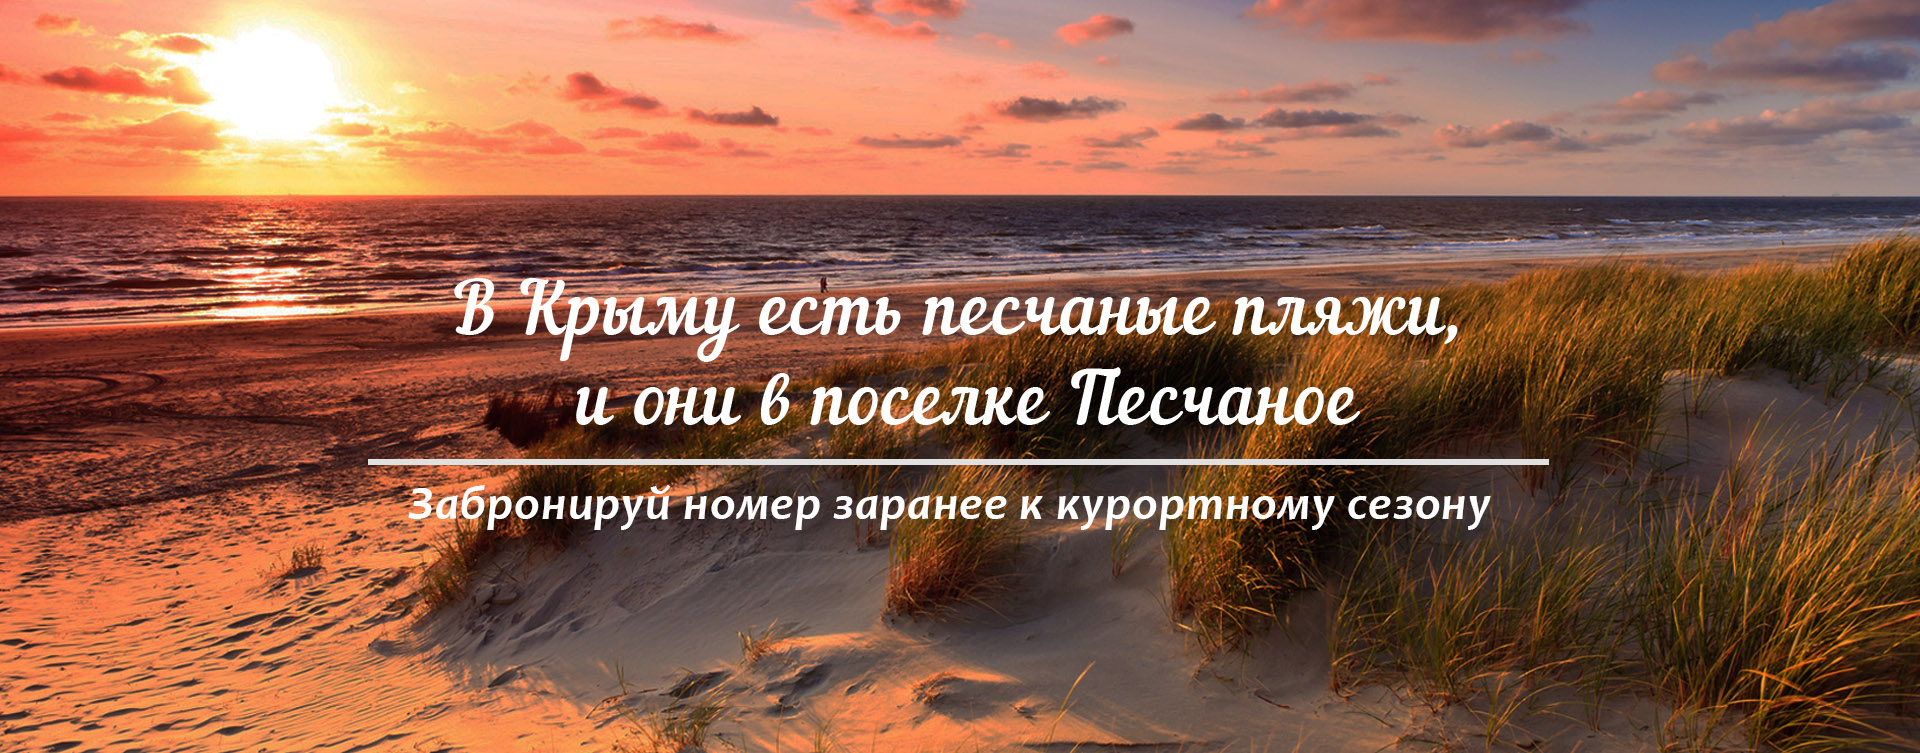 Отдых в Крыму с песчаным пляжем